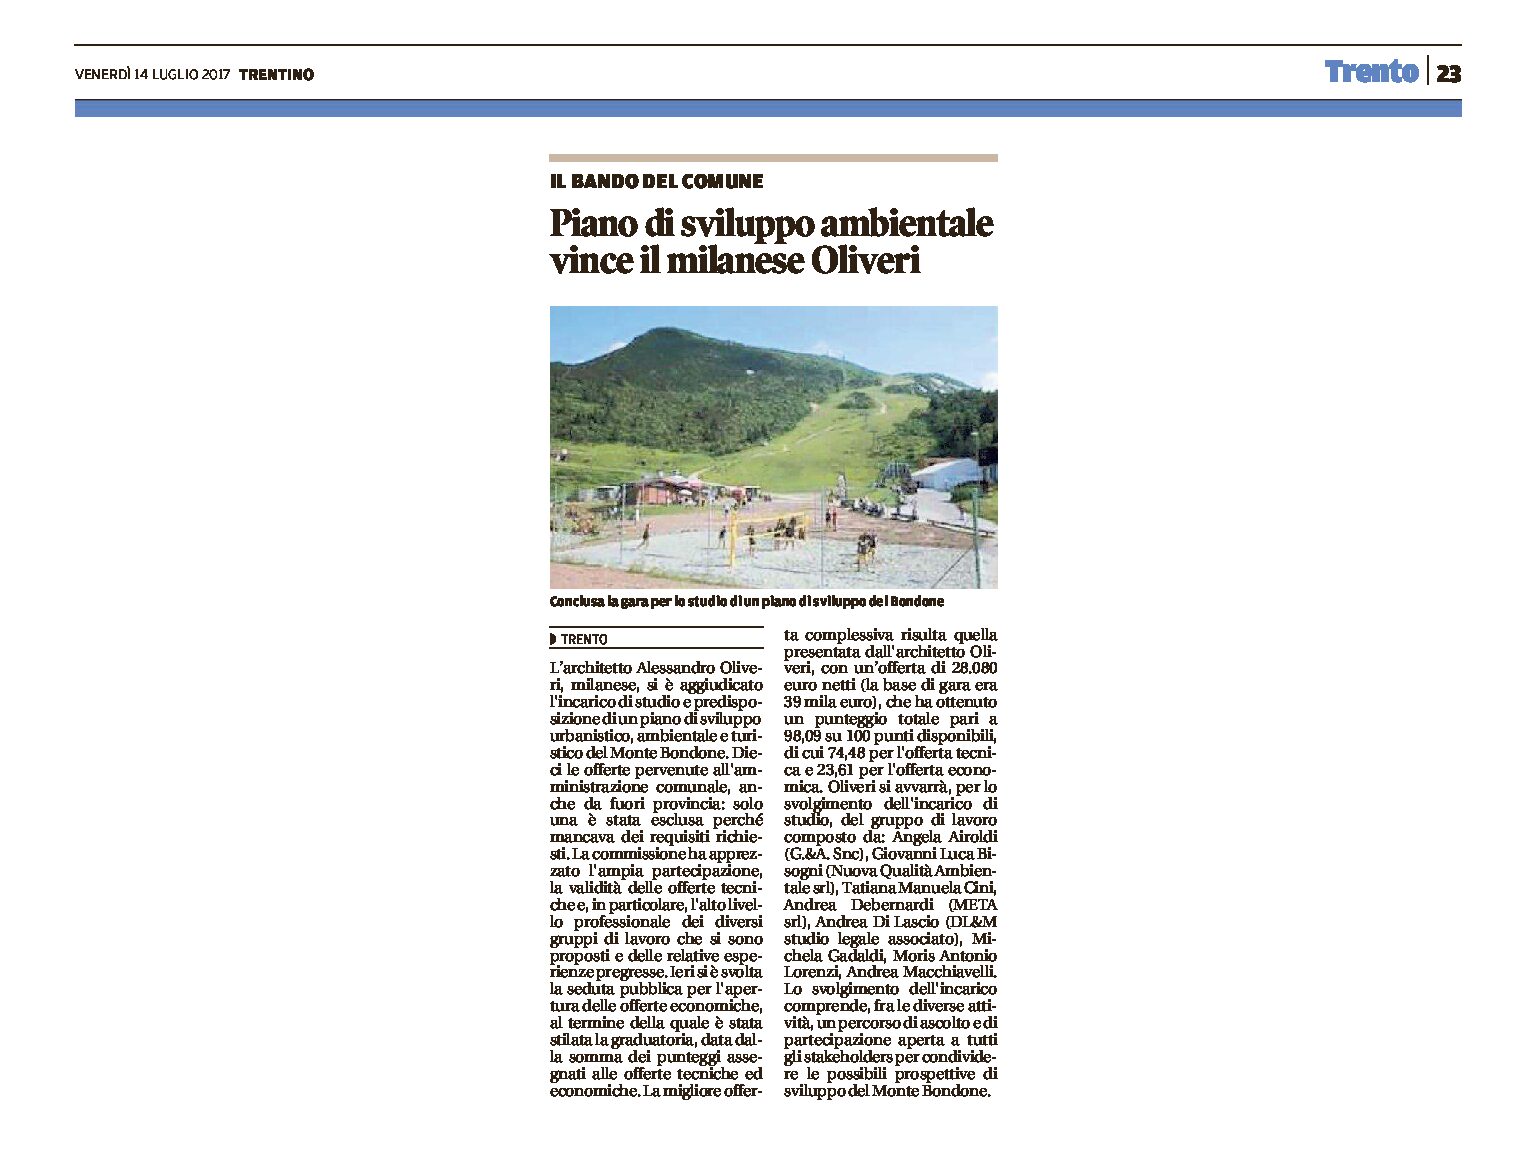 Bondone: Piano di sviluppo ambientale, vince il milanese Oliveri